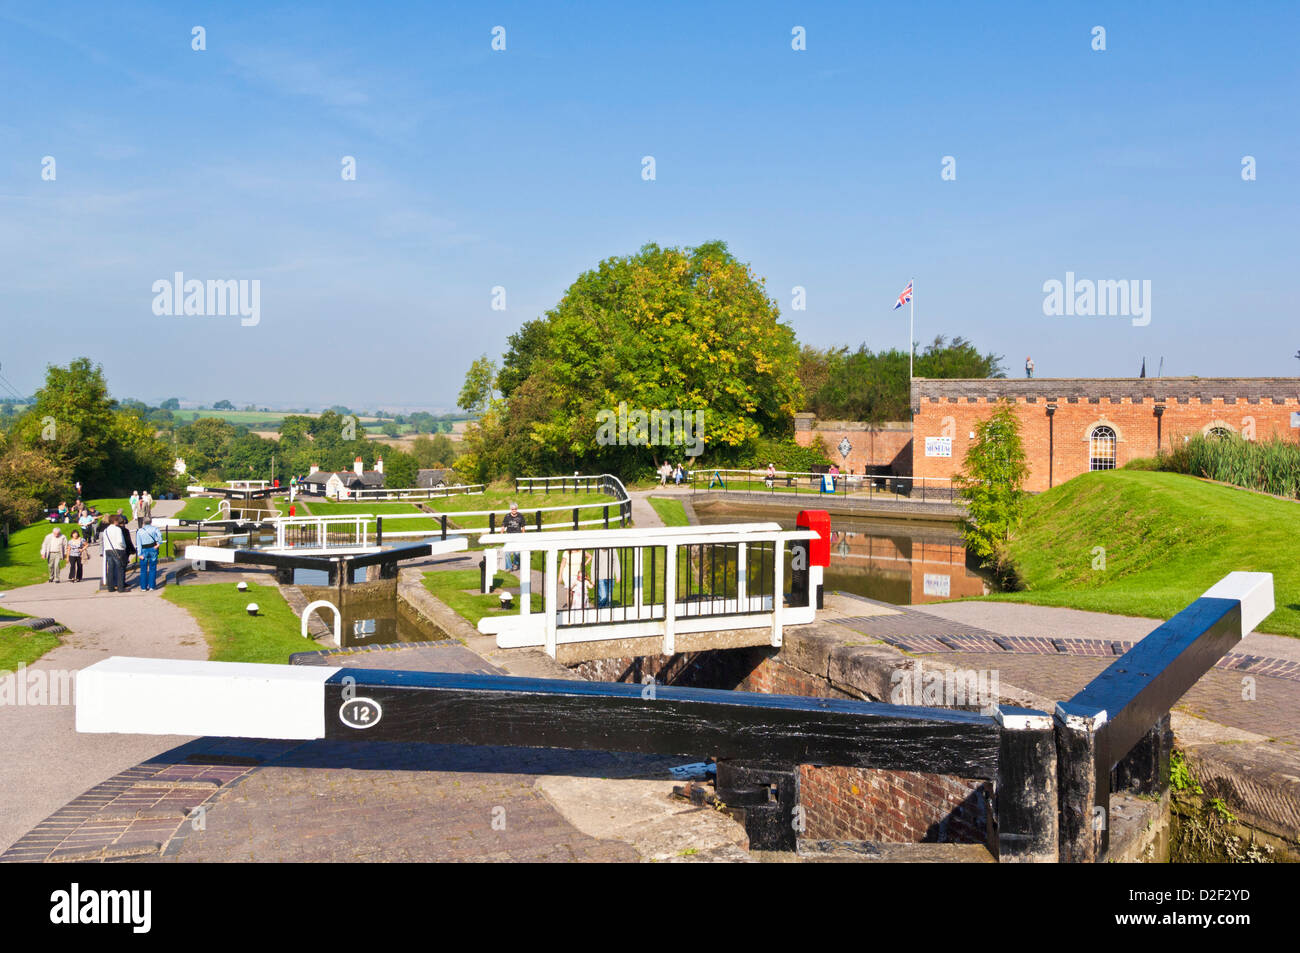 Vol historique de verrous à Foxton locks sur le Grand Union canal Leicestershire Angleterre UK GB EU Europe Banque D'Images